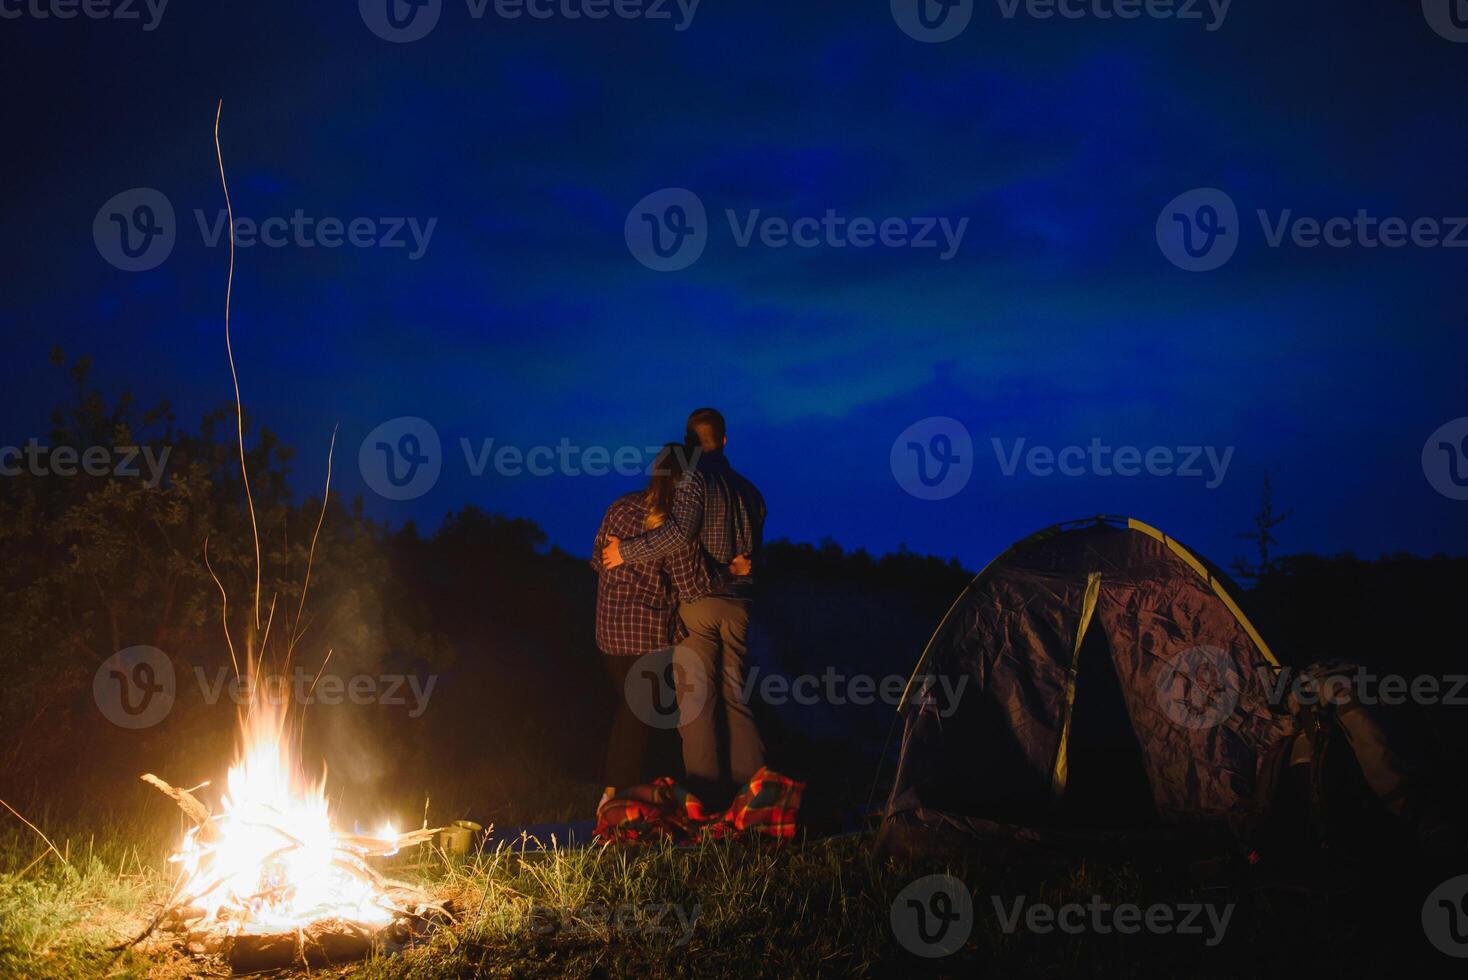 kärleksfull par vandrare njuter varje Övrig, stående förbi lägereld på natt under kväll himmel nära träd och tält. romantisk camping nära skog i de bergen foto